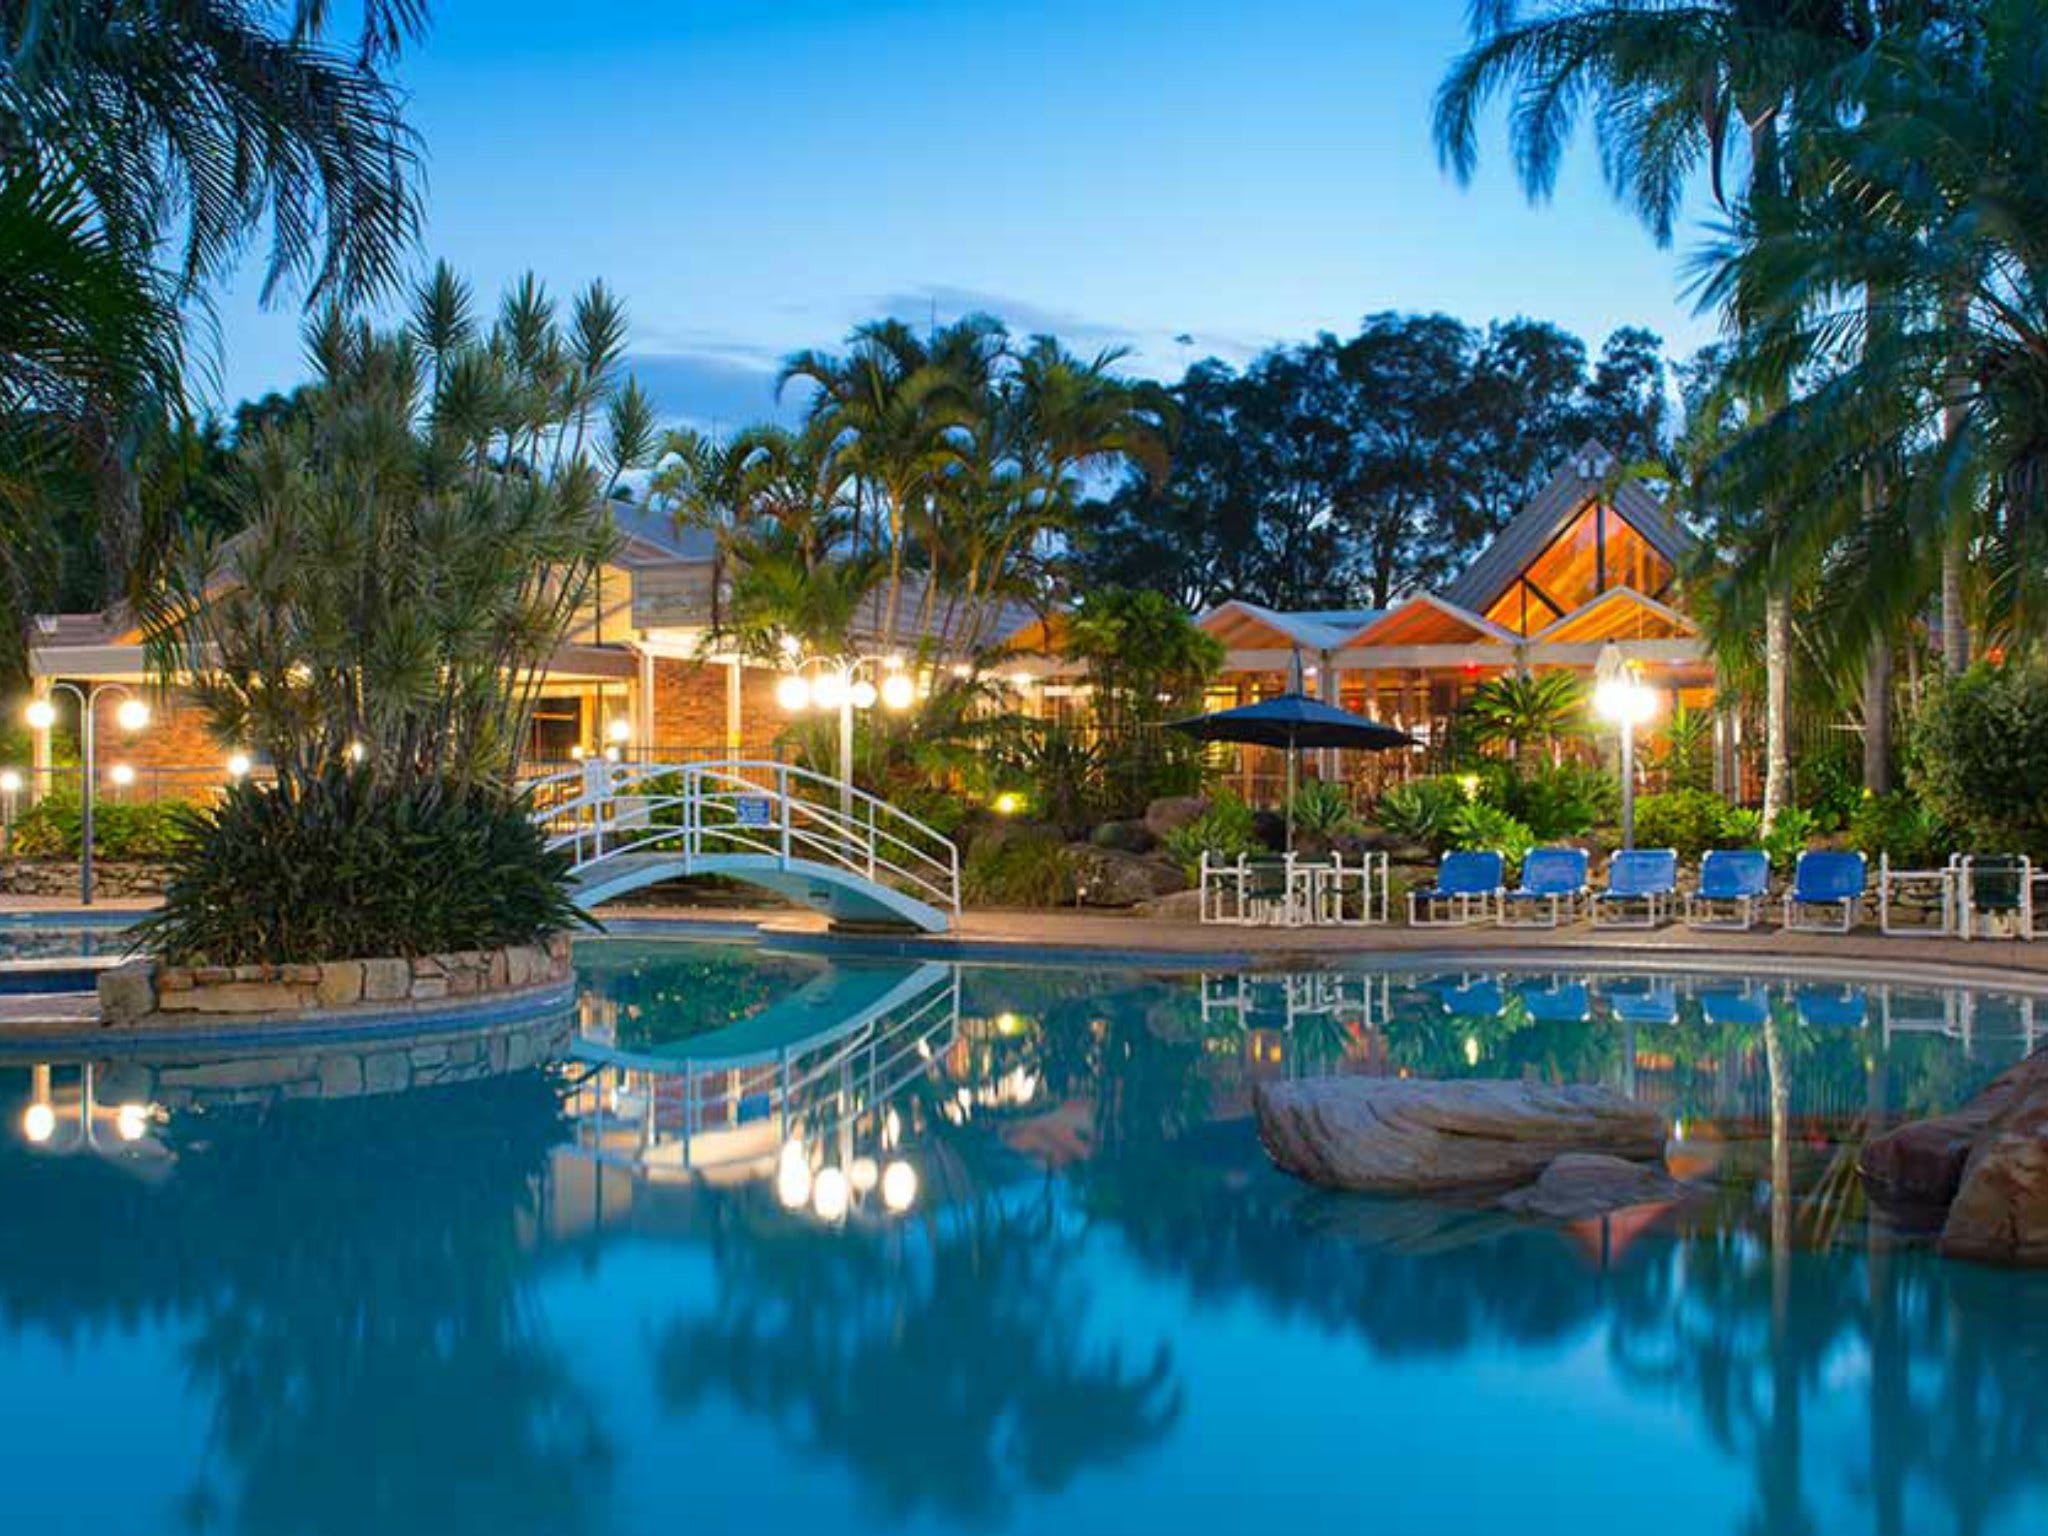 Boambee Bay Resort - Accommodation Sydney